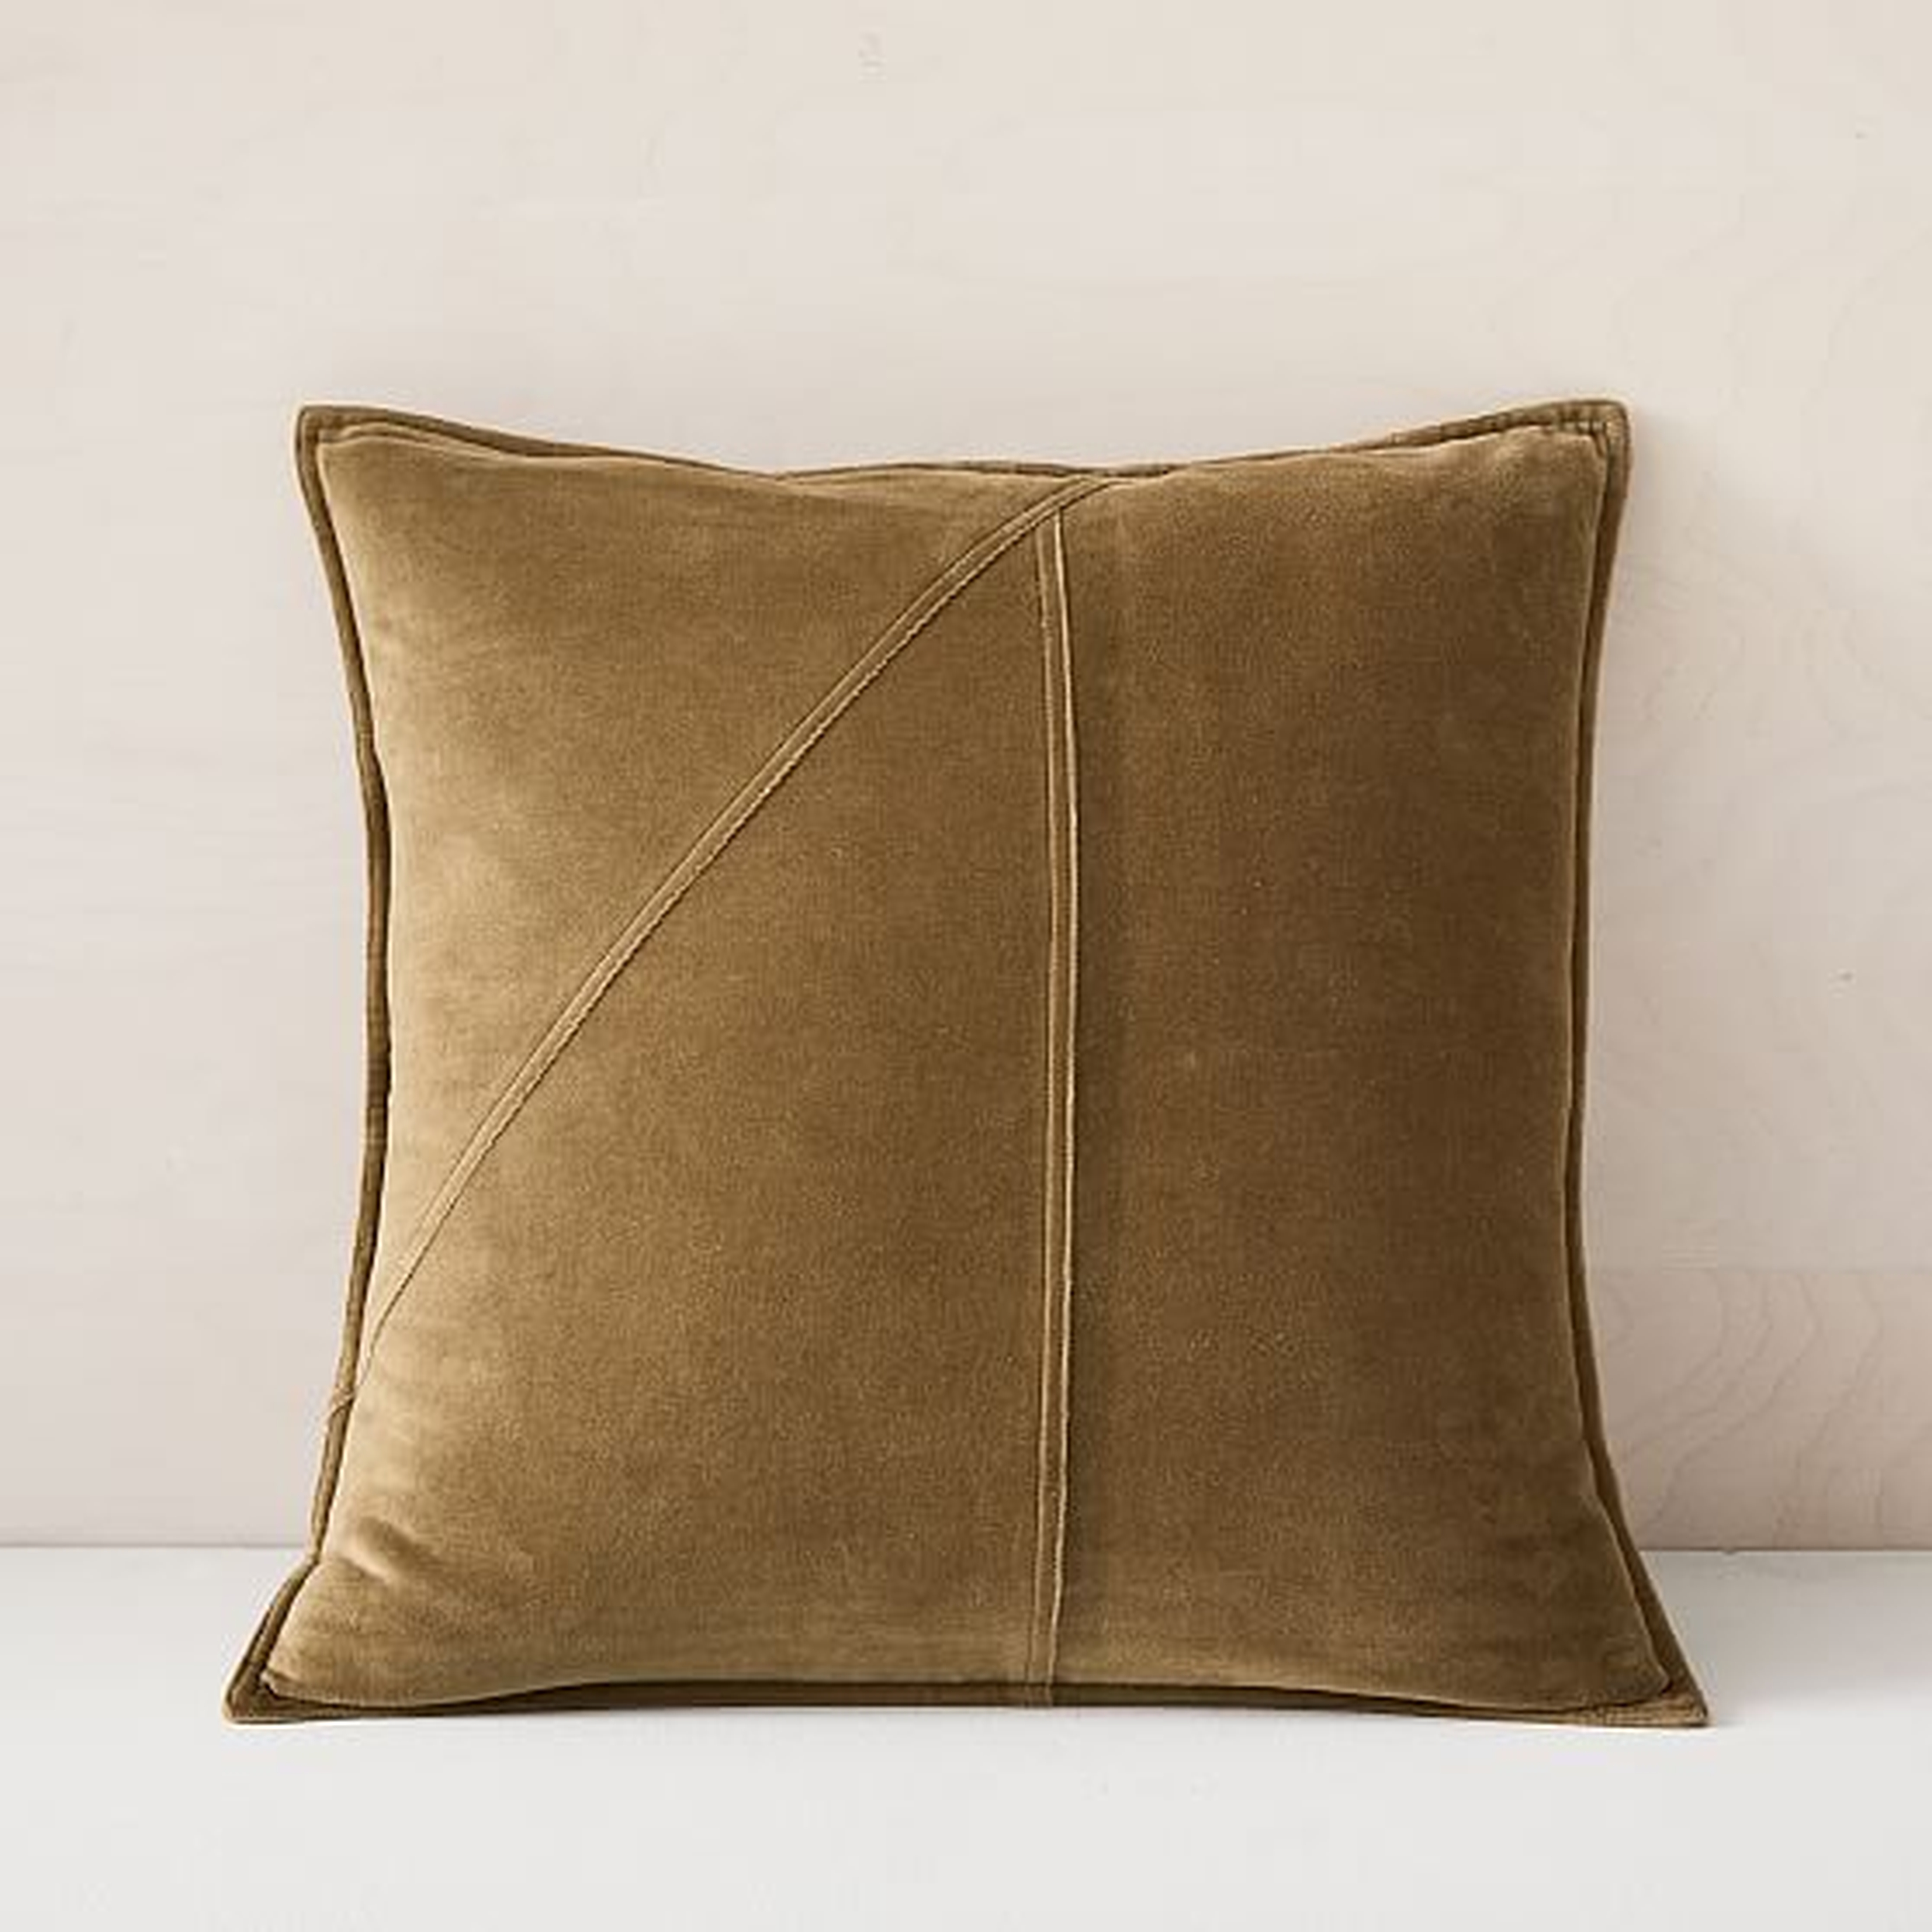 Washed Cotton Velvet Pillow Cover, 18"x18", cedar - West Elm